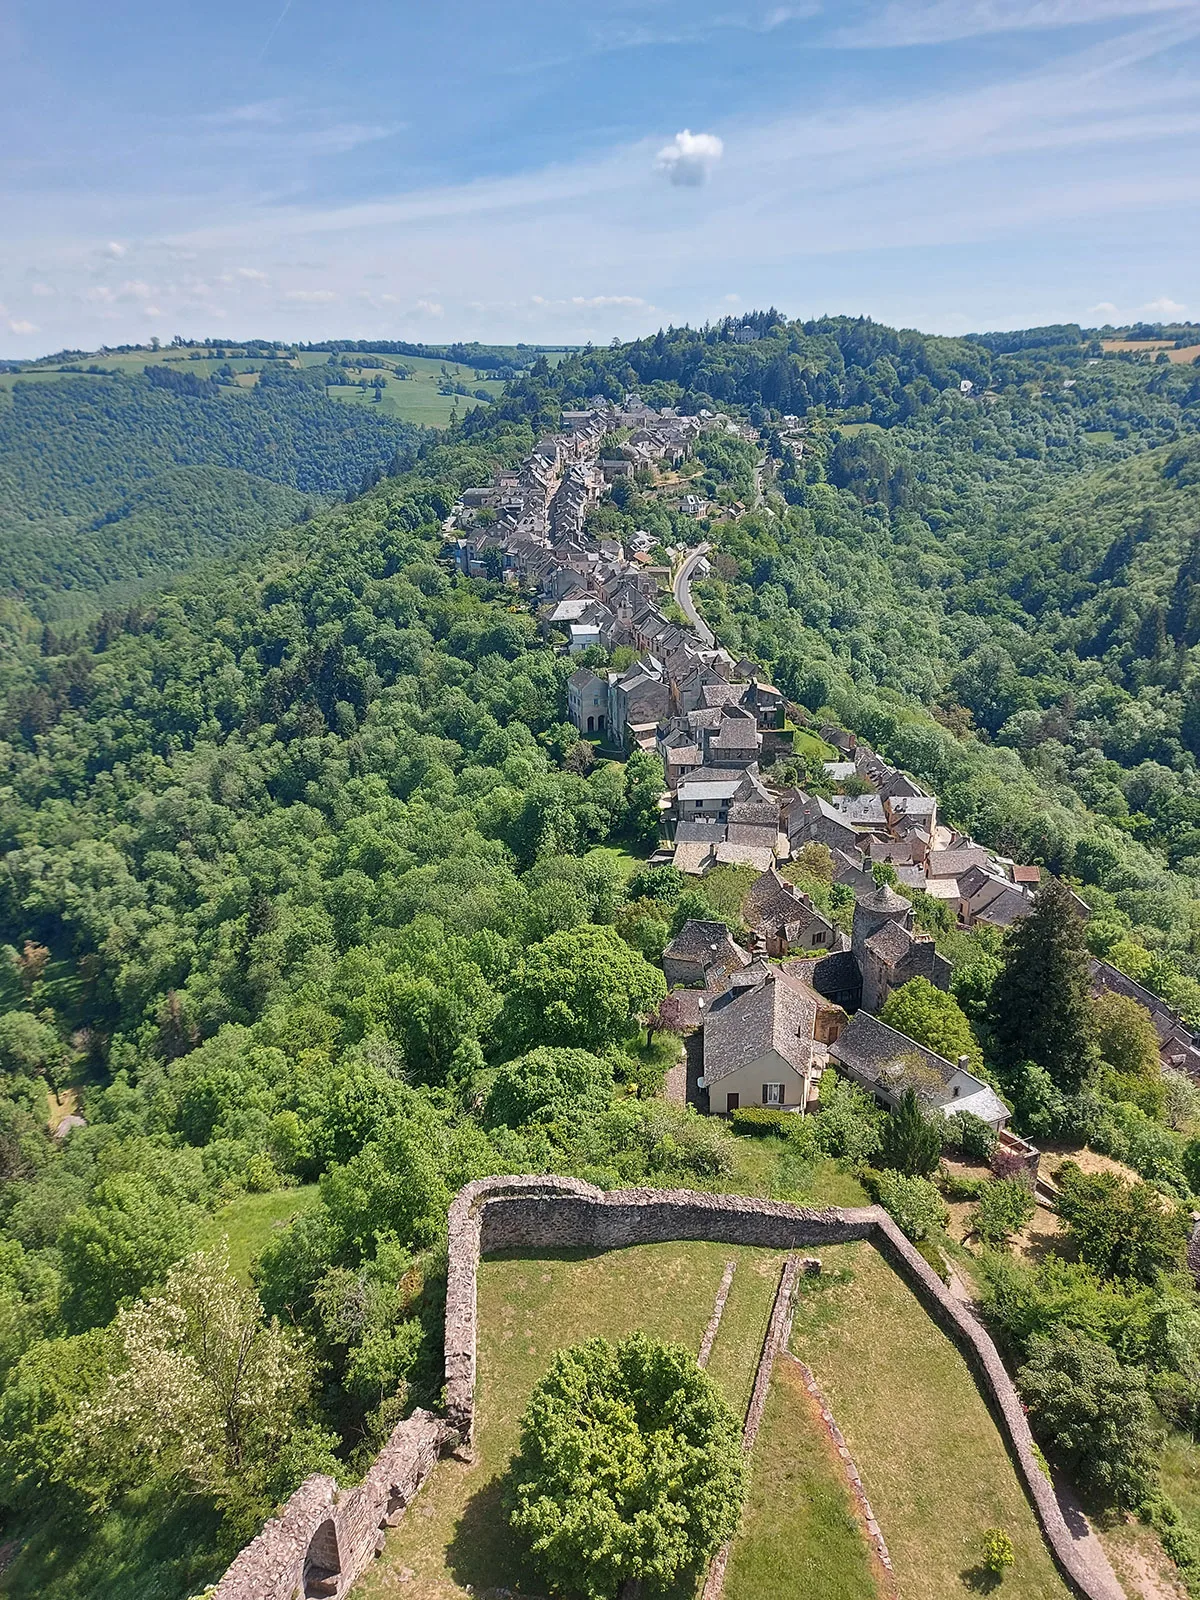 Dorf Najac von der Festung aus gesehen